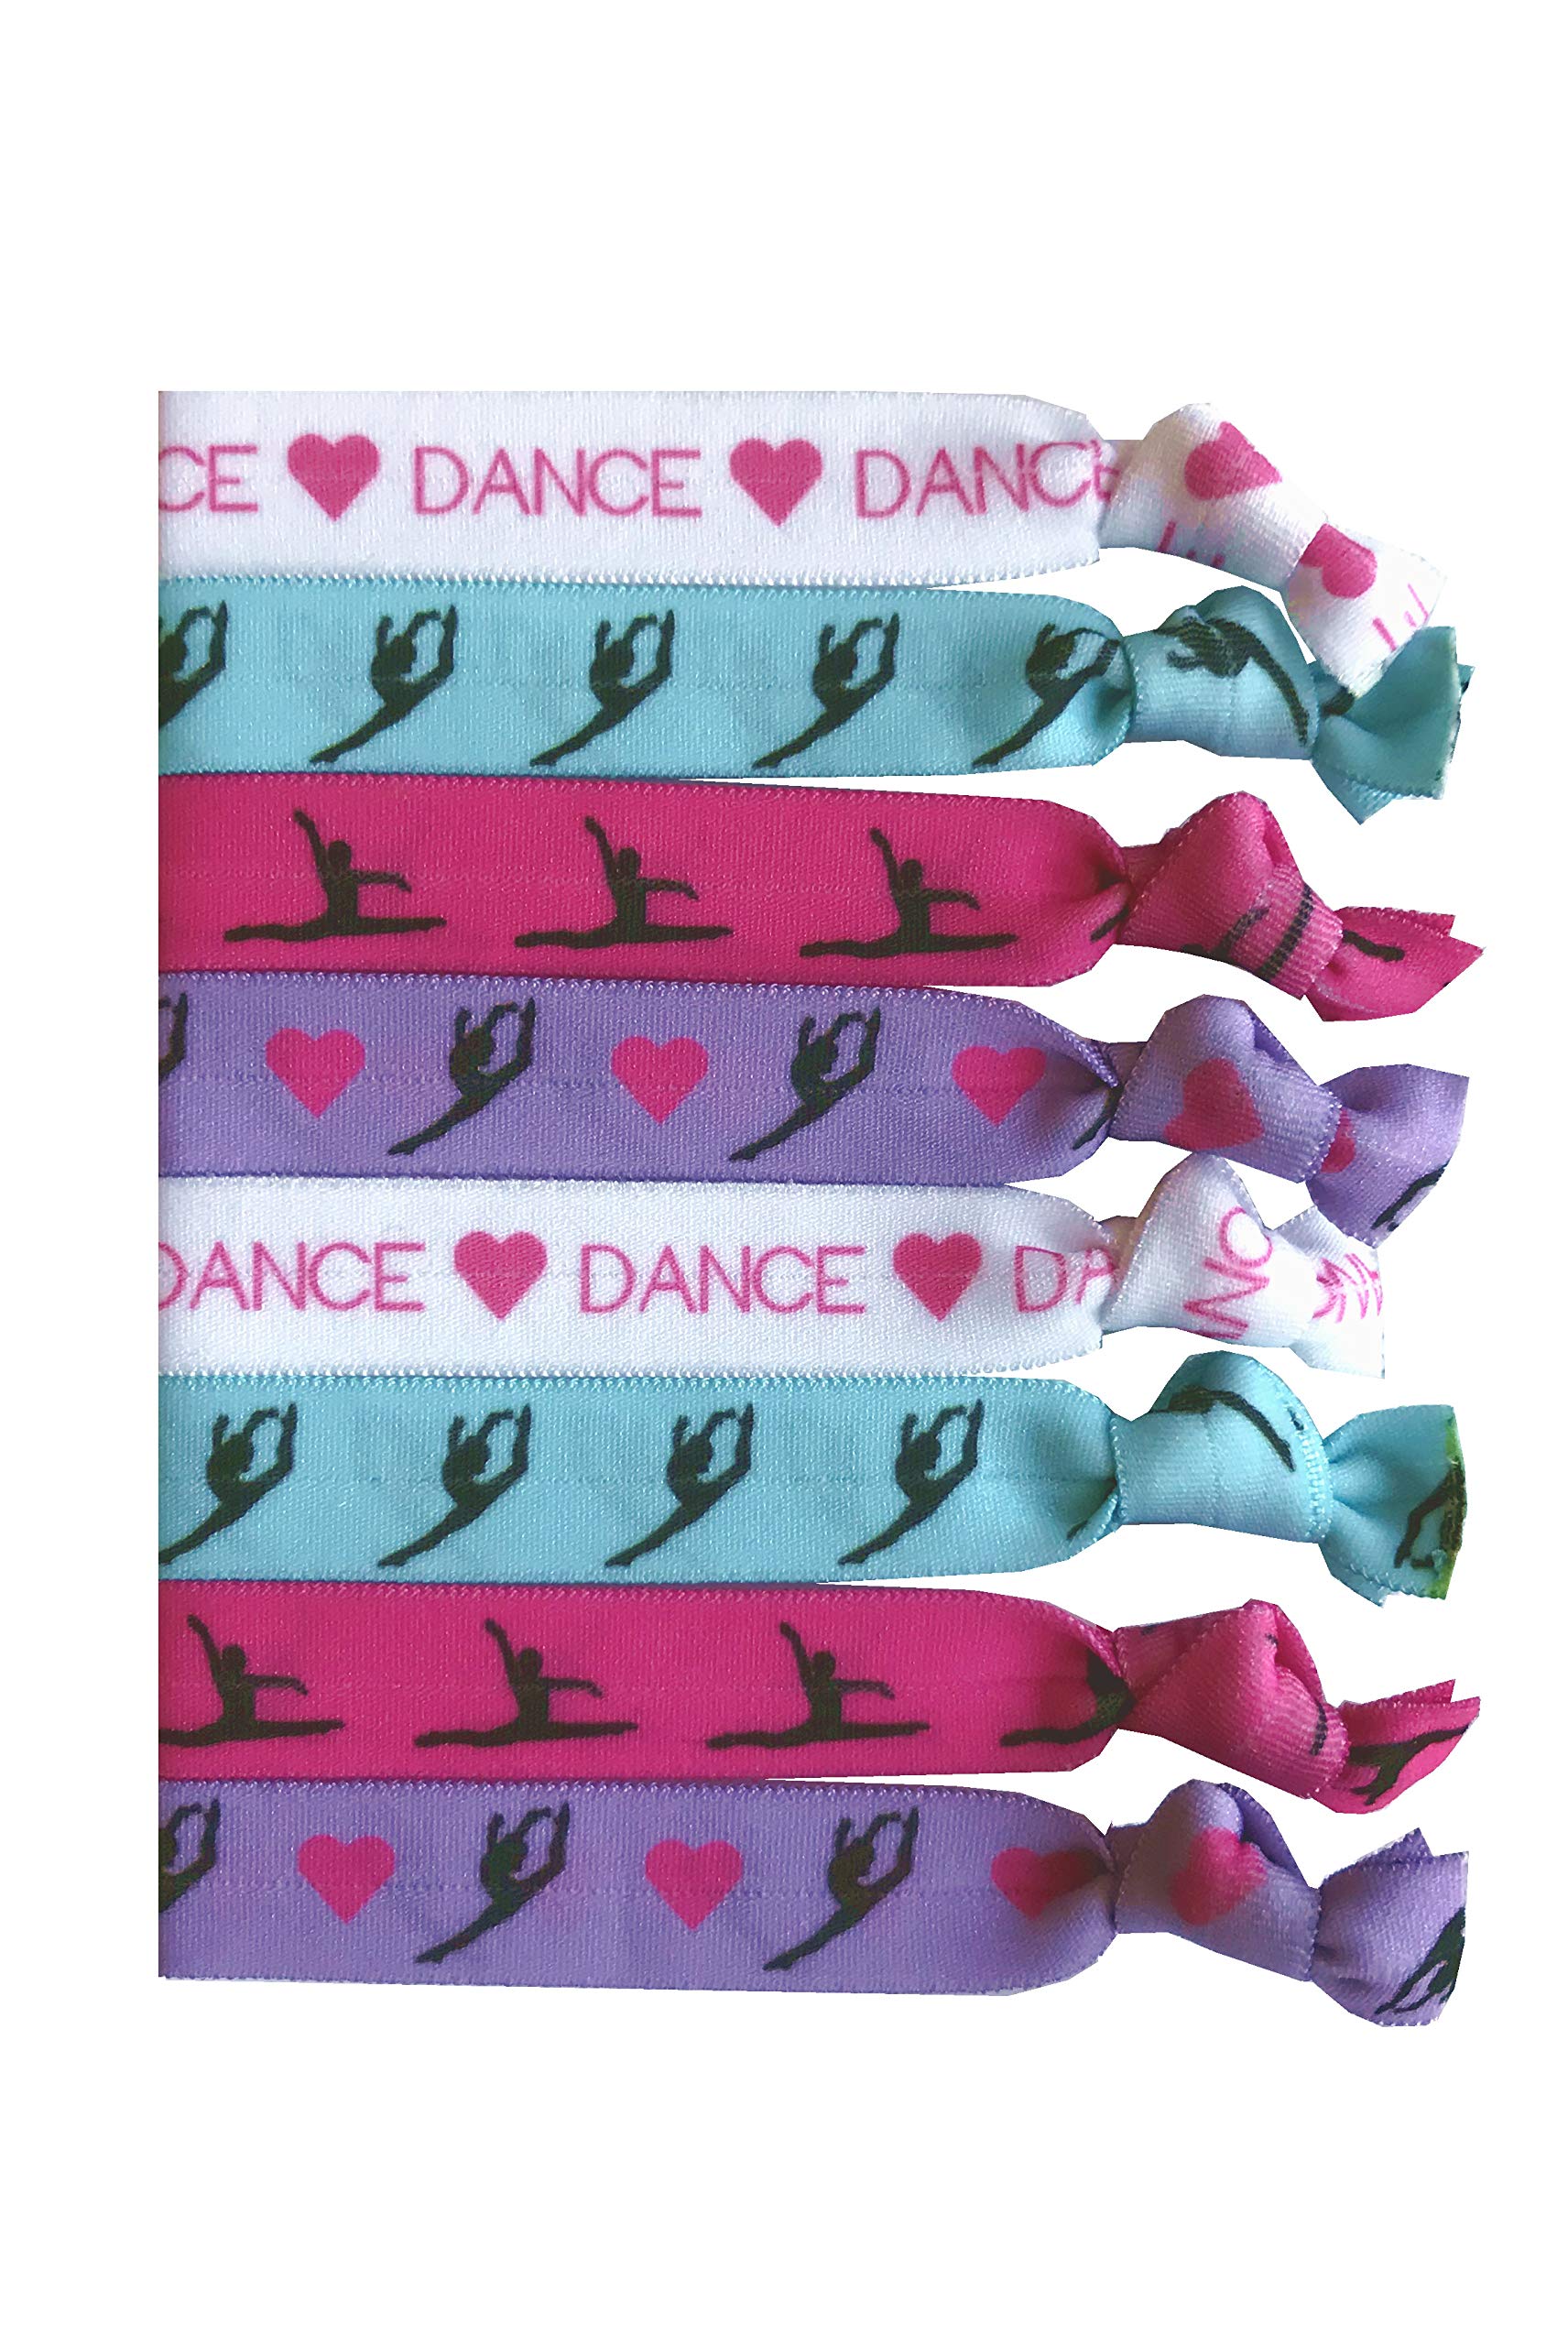 8 Piece Dance Gift Hair Elastics - Dance Gifts for Girls Dancer Gifts  Ballet Gifts Ballet Gifts for Girls Dance Accessories for Dancers Women  Girls Dance Teachers Dance Classes